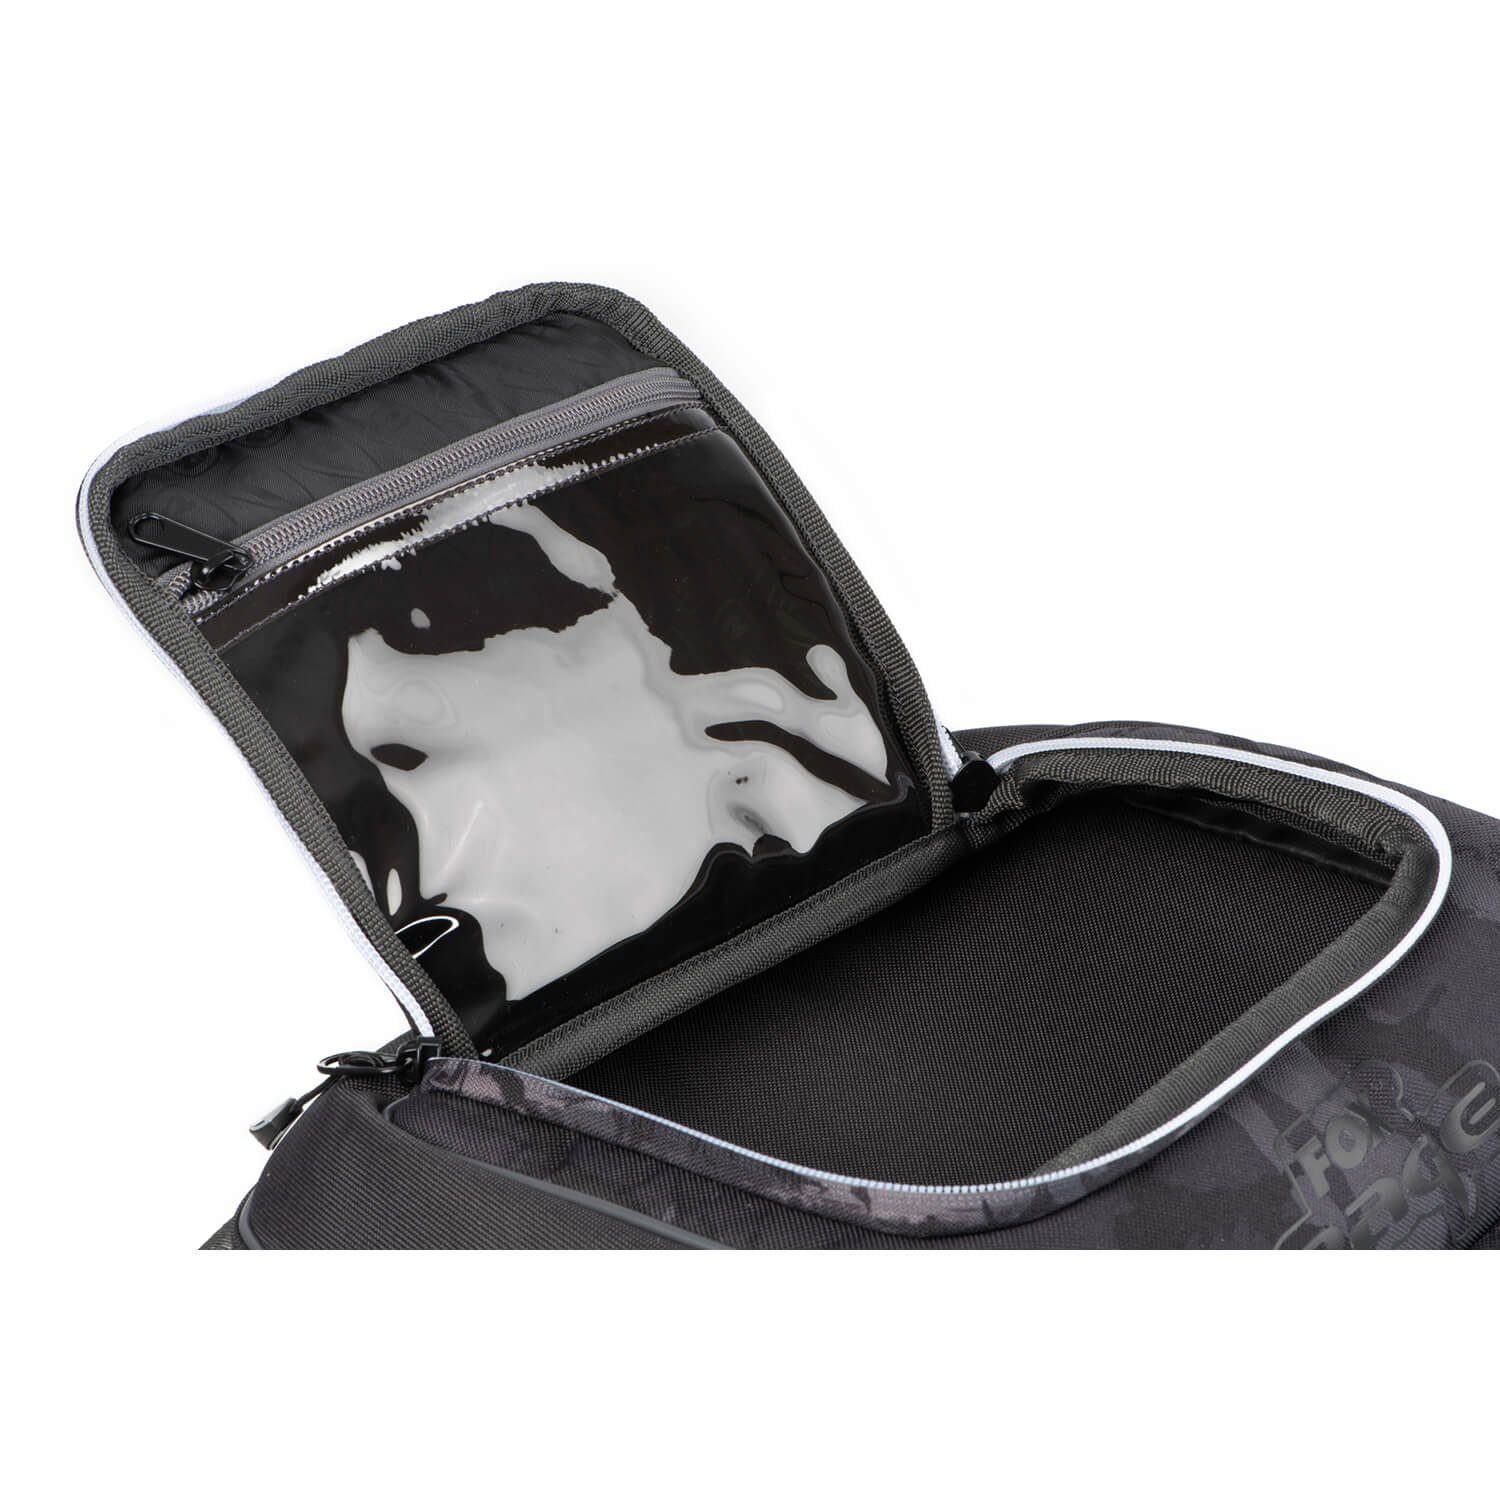 Rage die Voyager EVA-Taschenbasis, Klettgesicherte für Halterung Rage EVA-Handtragegriffe, Fox für Polarisationsbrille Federzugbefestigung Reisetasche, Fox für Medium Camo Zangen, Reisetasche Schultertragegurt, 3D-gepolsterter Komplett Hochrobuste Hartschalenaußentasche bestückt, Schützende Werkzeuge, Tackleboxen Carryall Camo-Tarnreißverschlüsse, mit